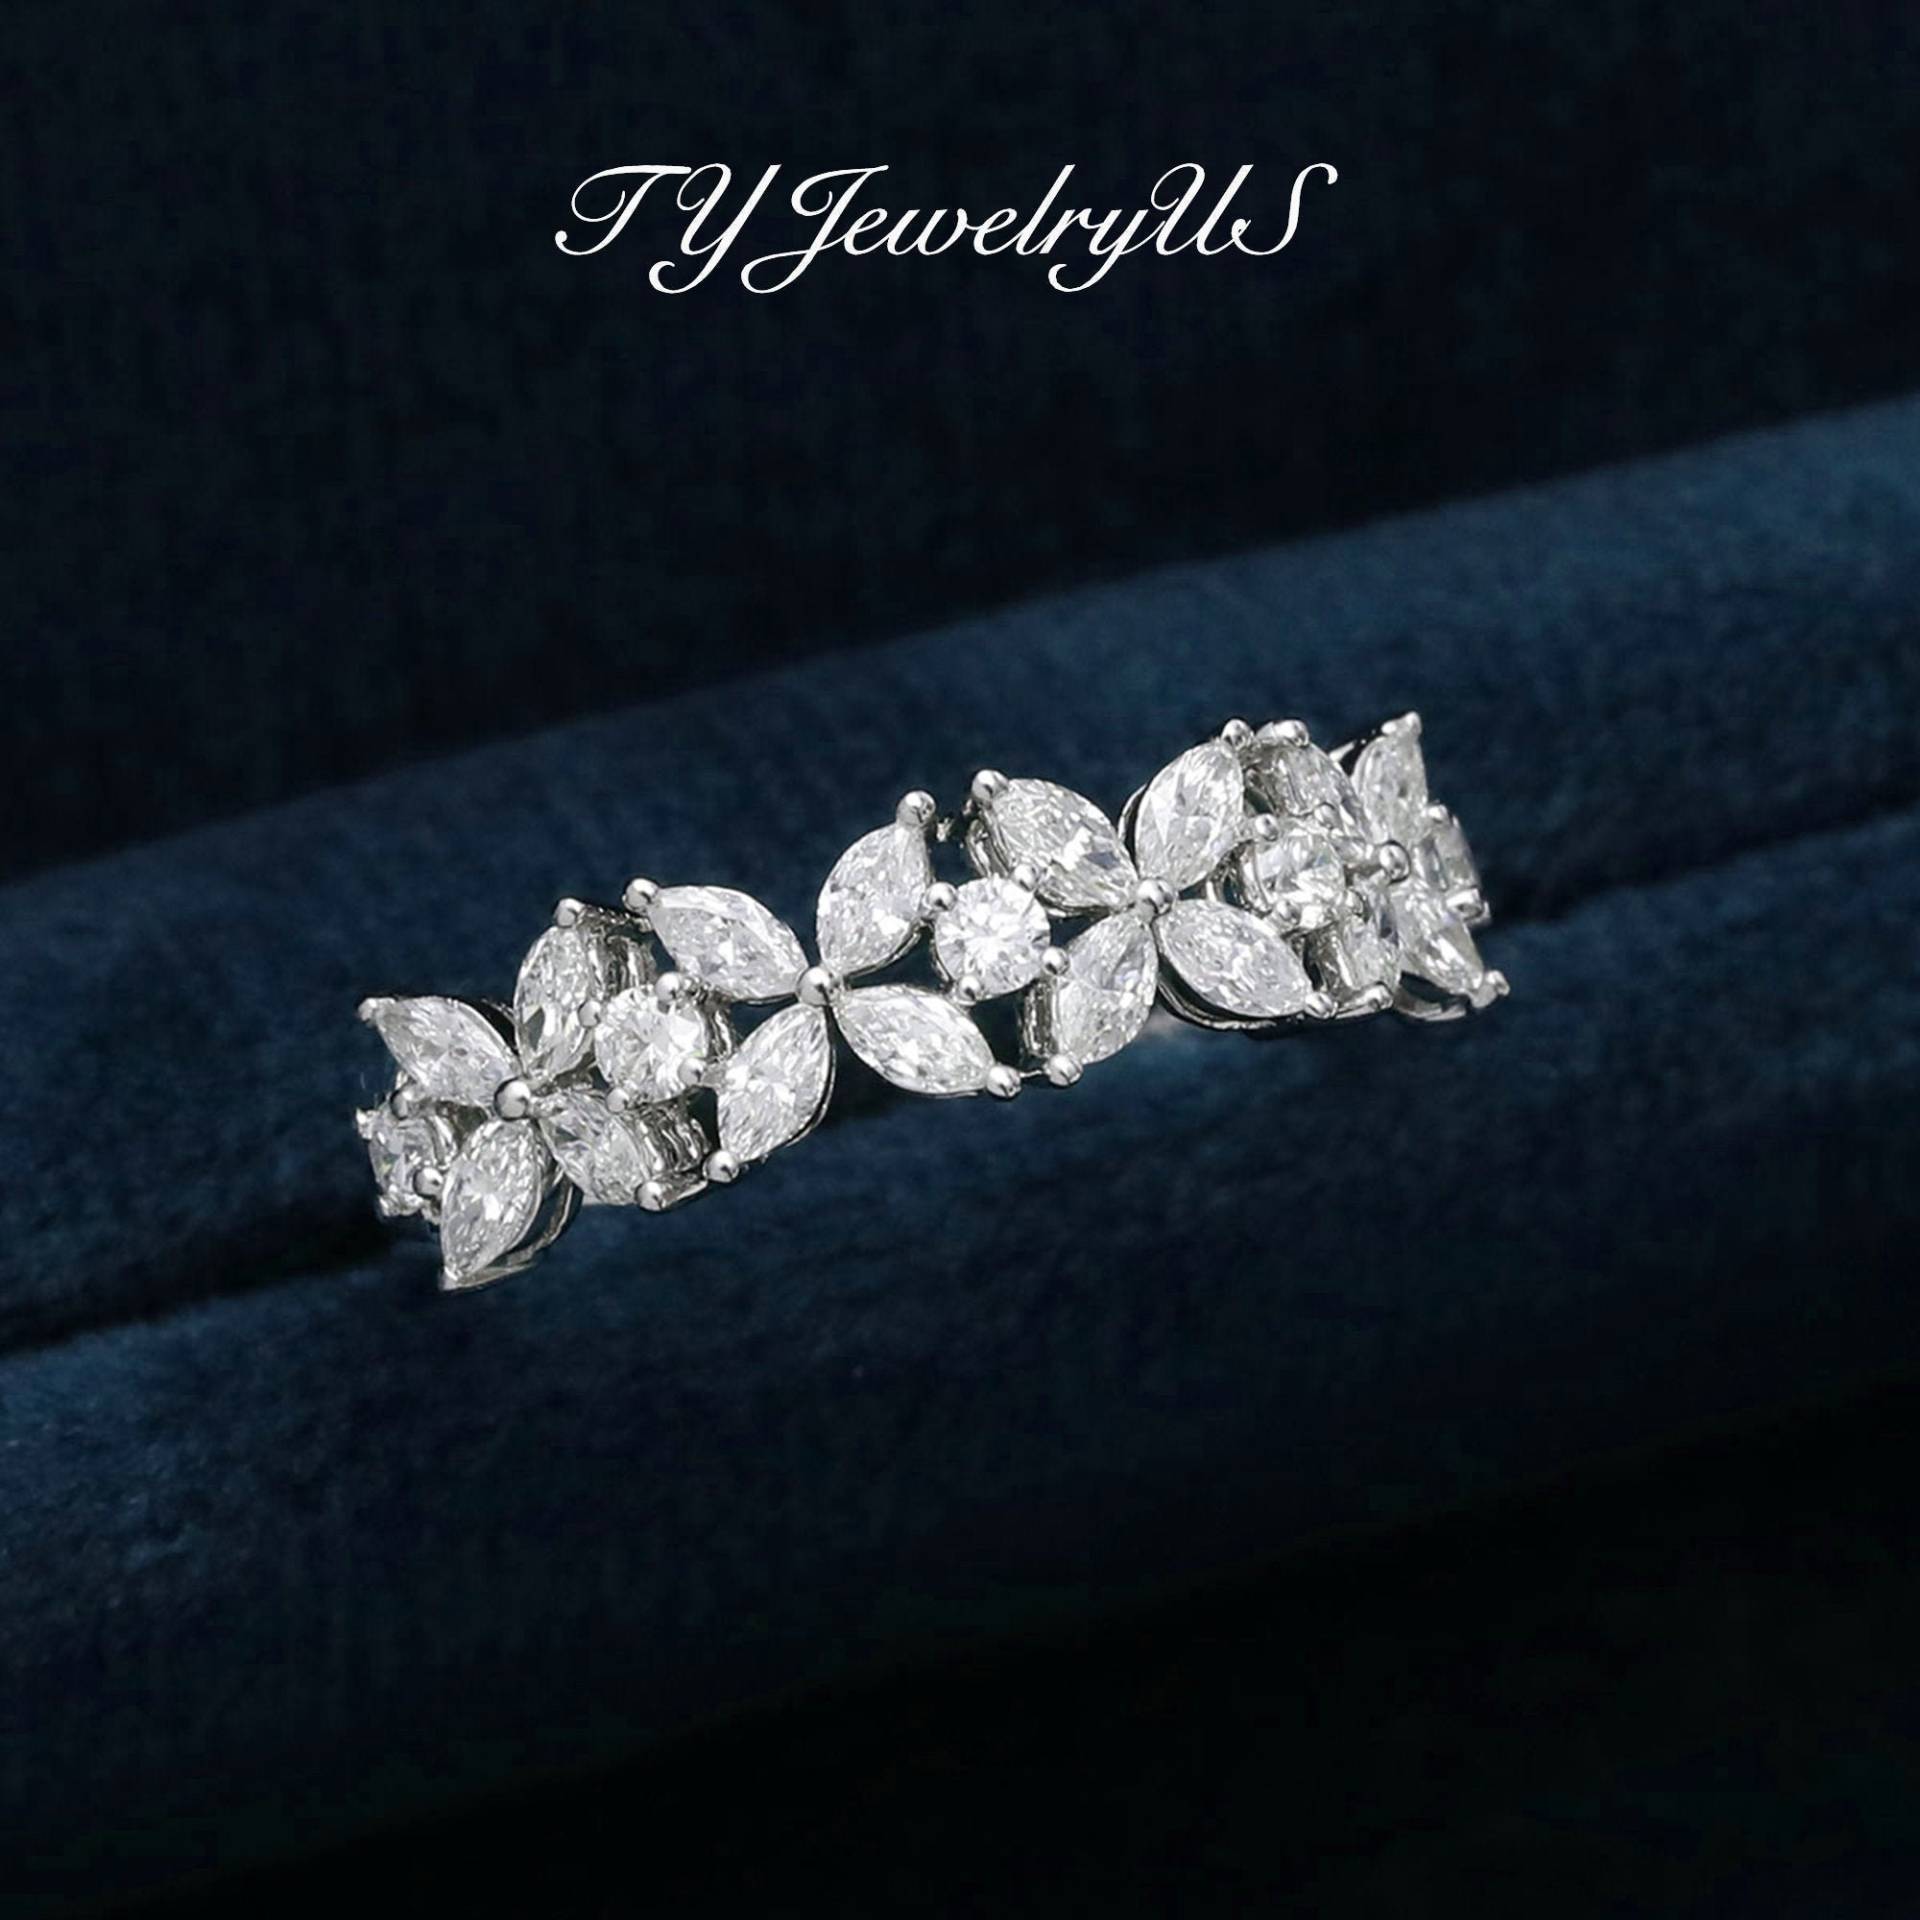 Moissanite Verlobungsring Frauen Weißgold Marquise Schliff Diamant Ring Blume Form Ehering Passender Stapelband Art Deco von TYJewelryUS